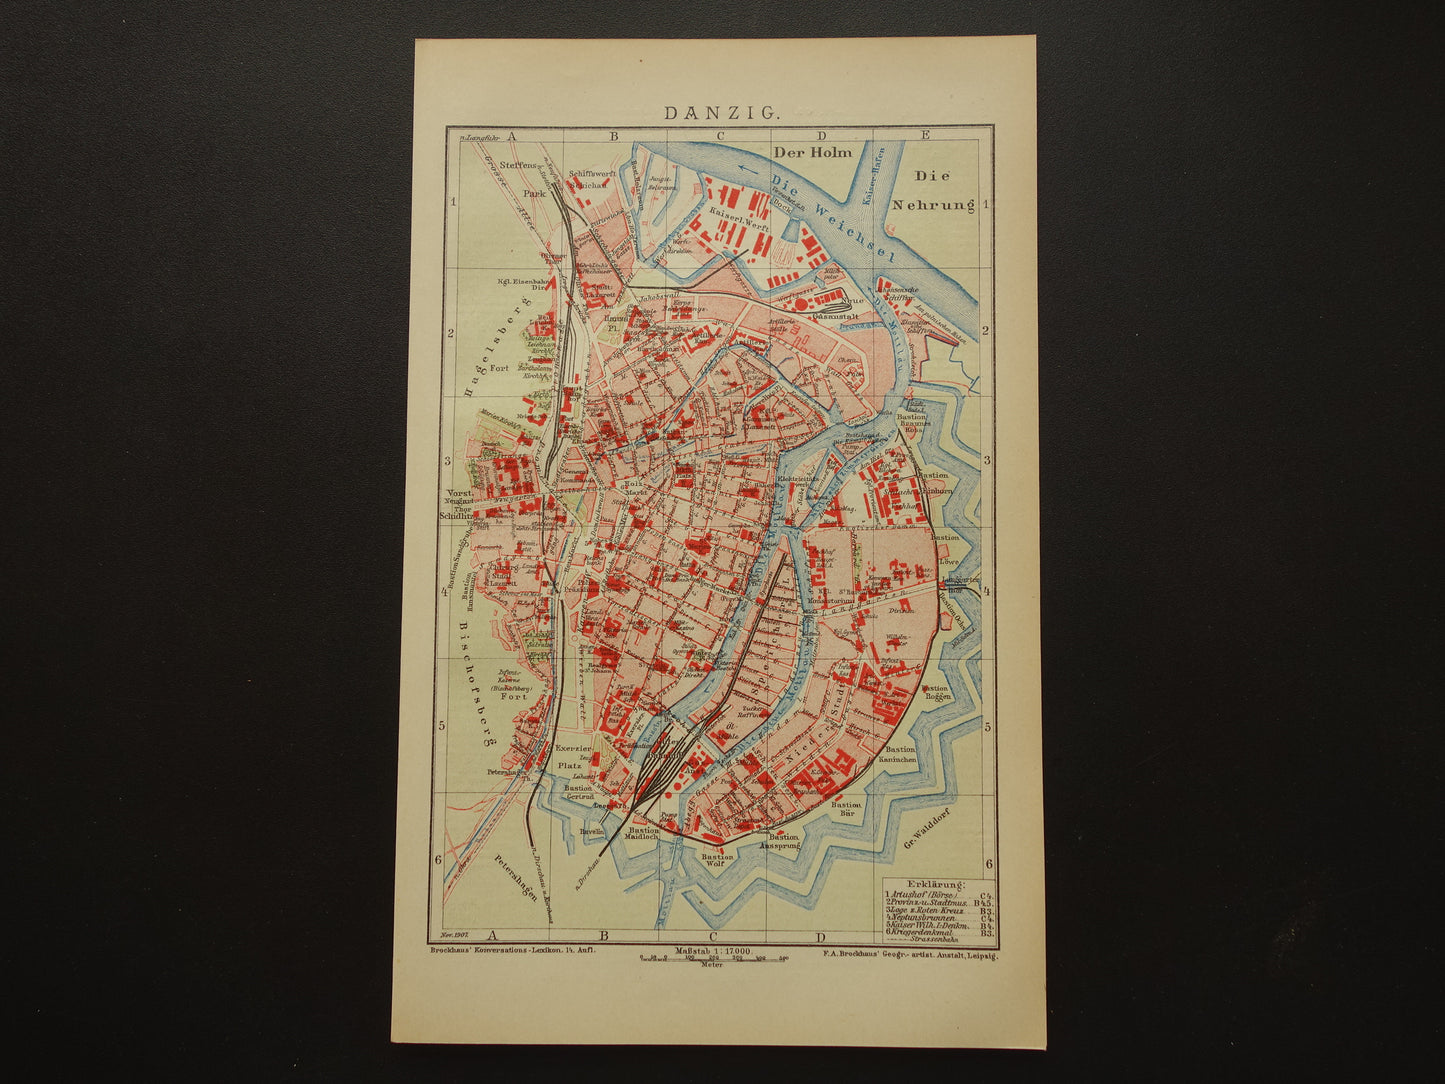 Oude kaart van Gdansk Danzig Polen 1908 originele antieke historische plattegrond Gdańsk vintage kaarten